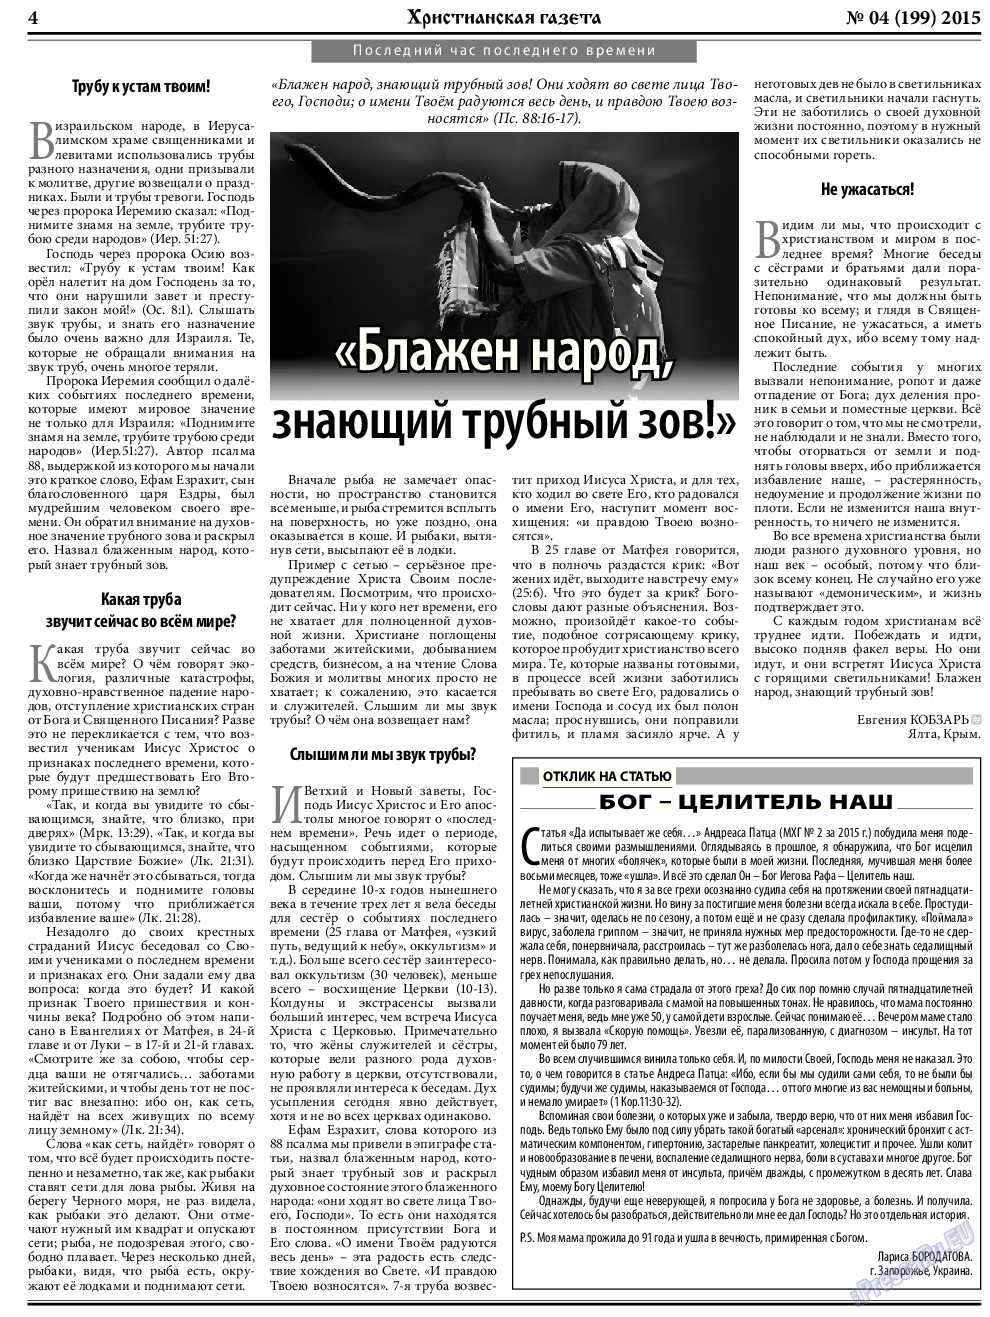 Христианская газета, газета. 2015 №4 стр.4